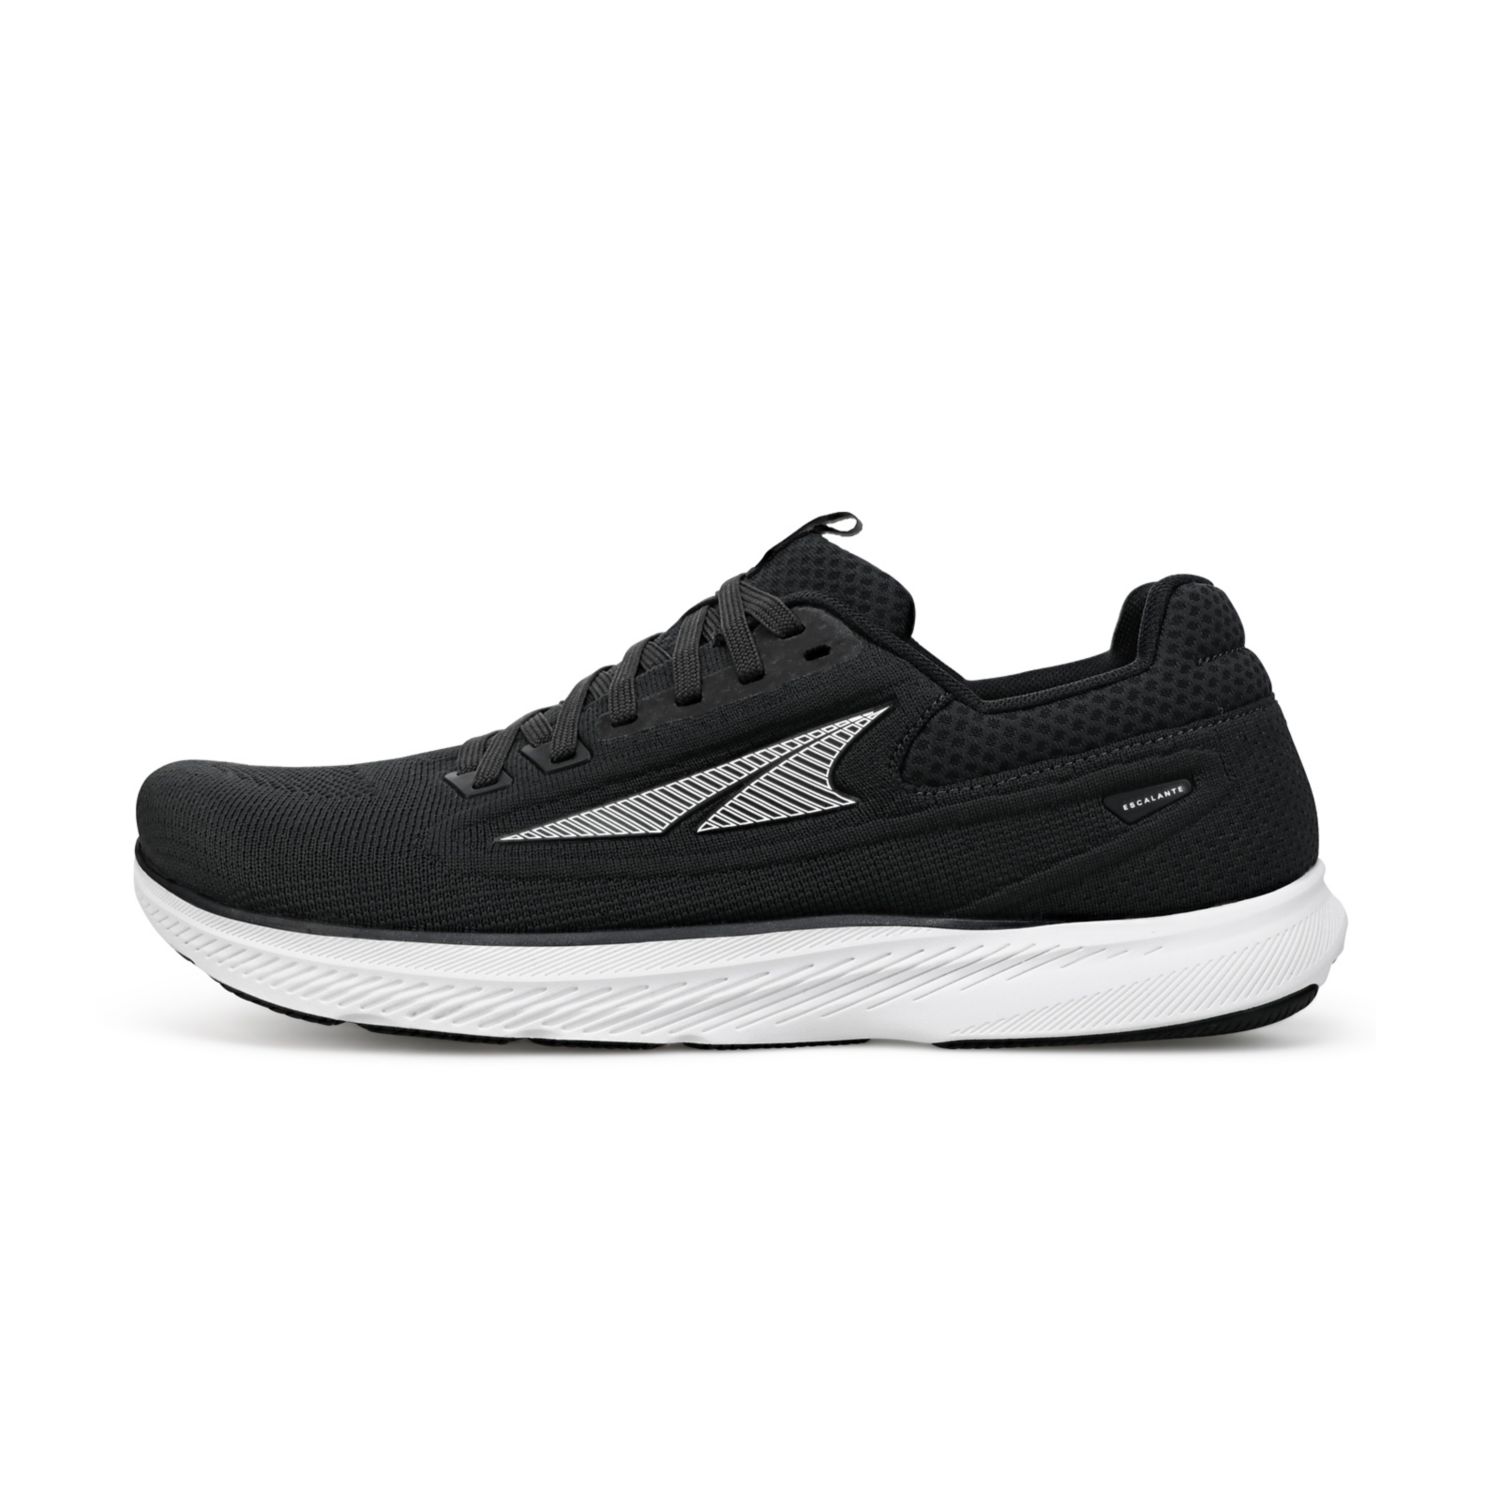 Black Altra Escalante 3 Men's Sneakers | Australia-17283649